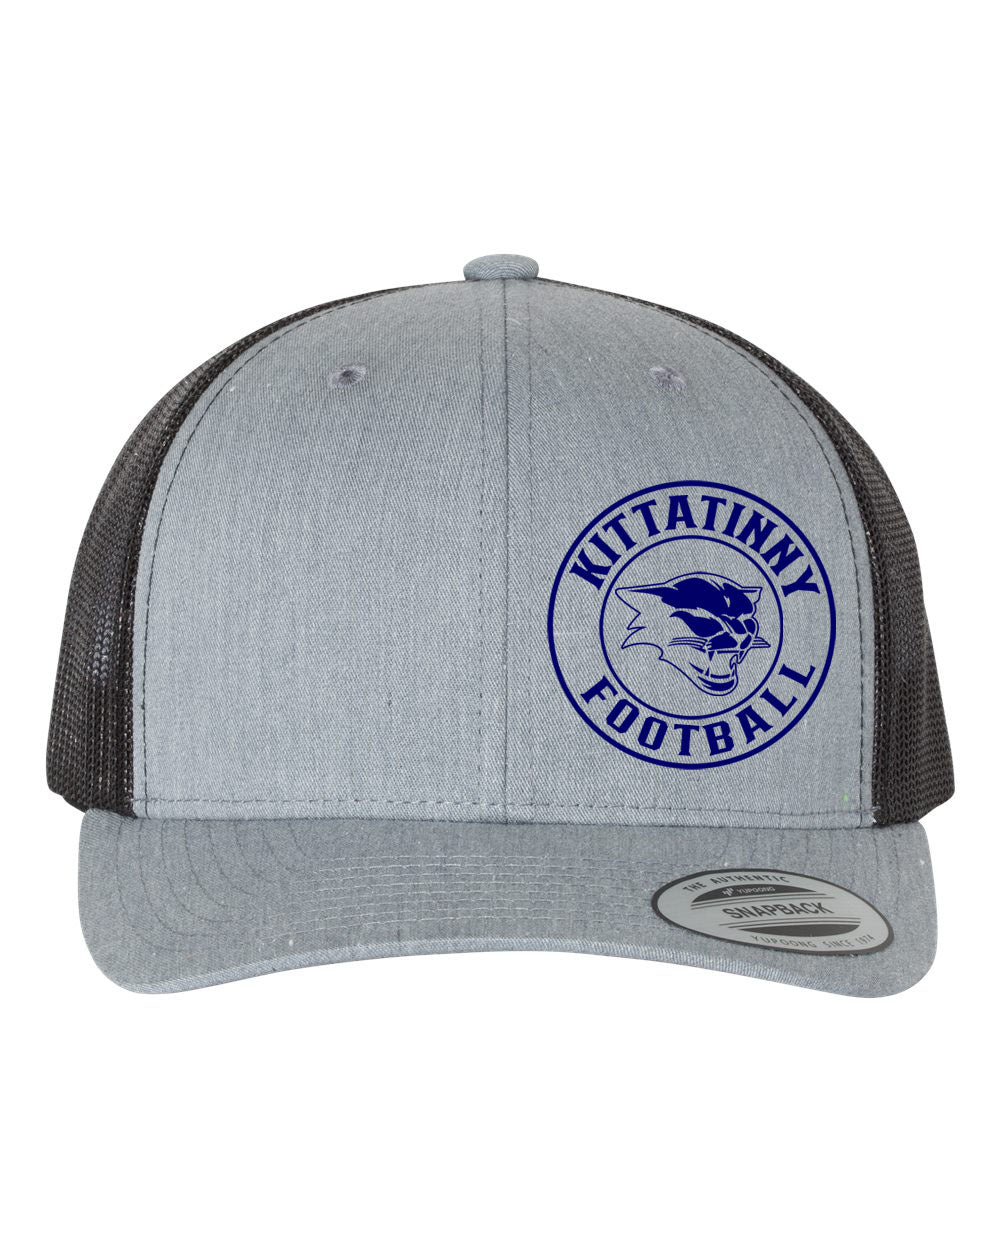 Kittatinny Football design 5 Trucker Hat